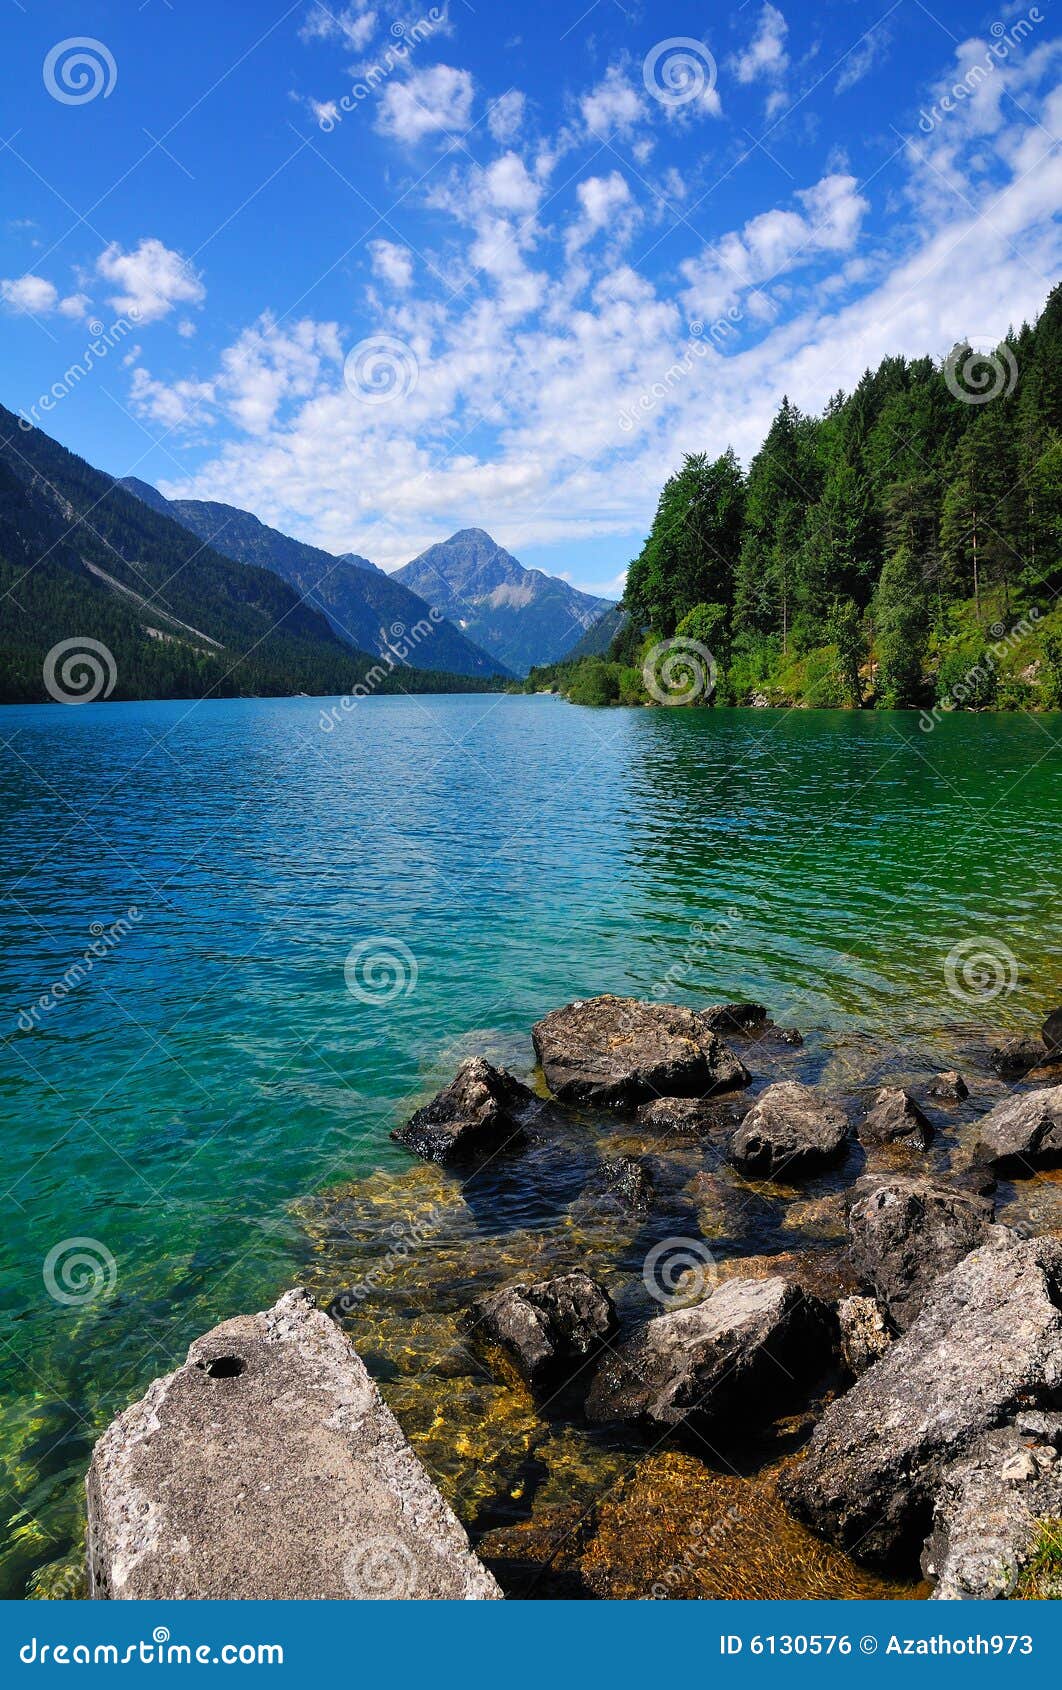 alpine lake in tirol